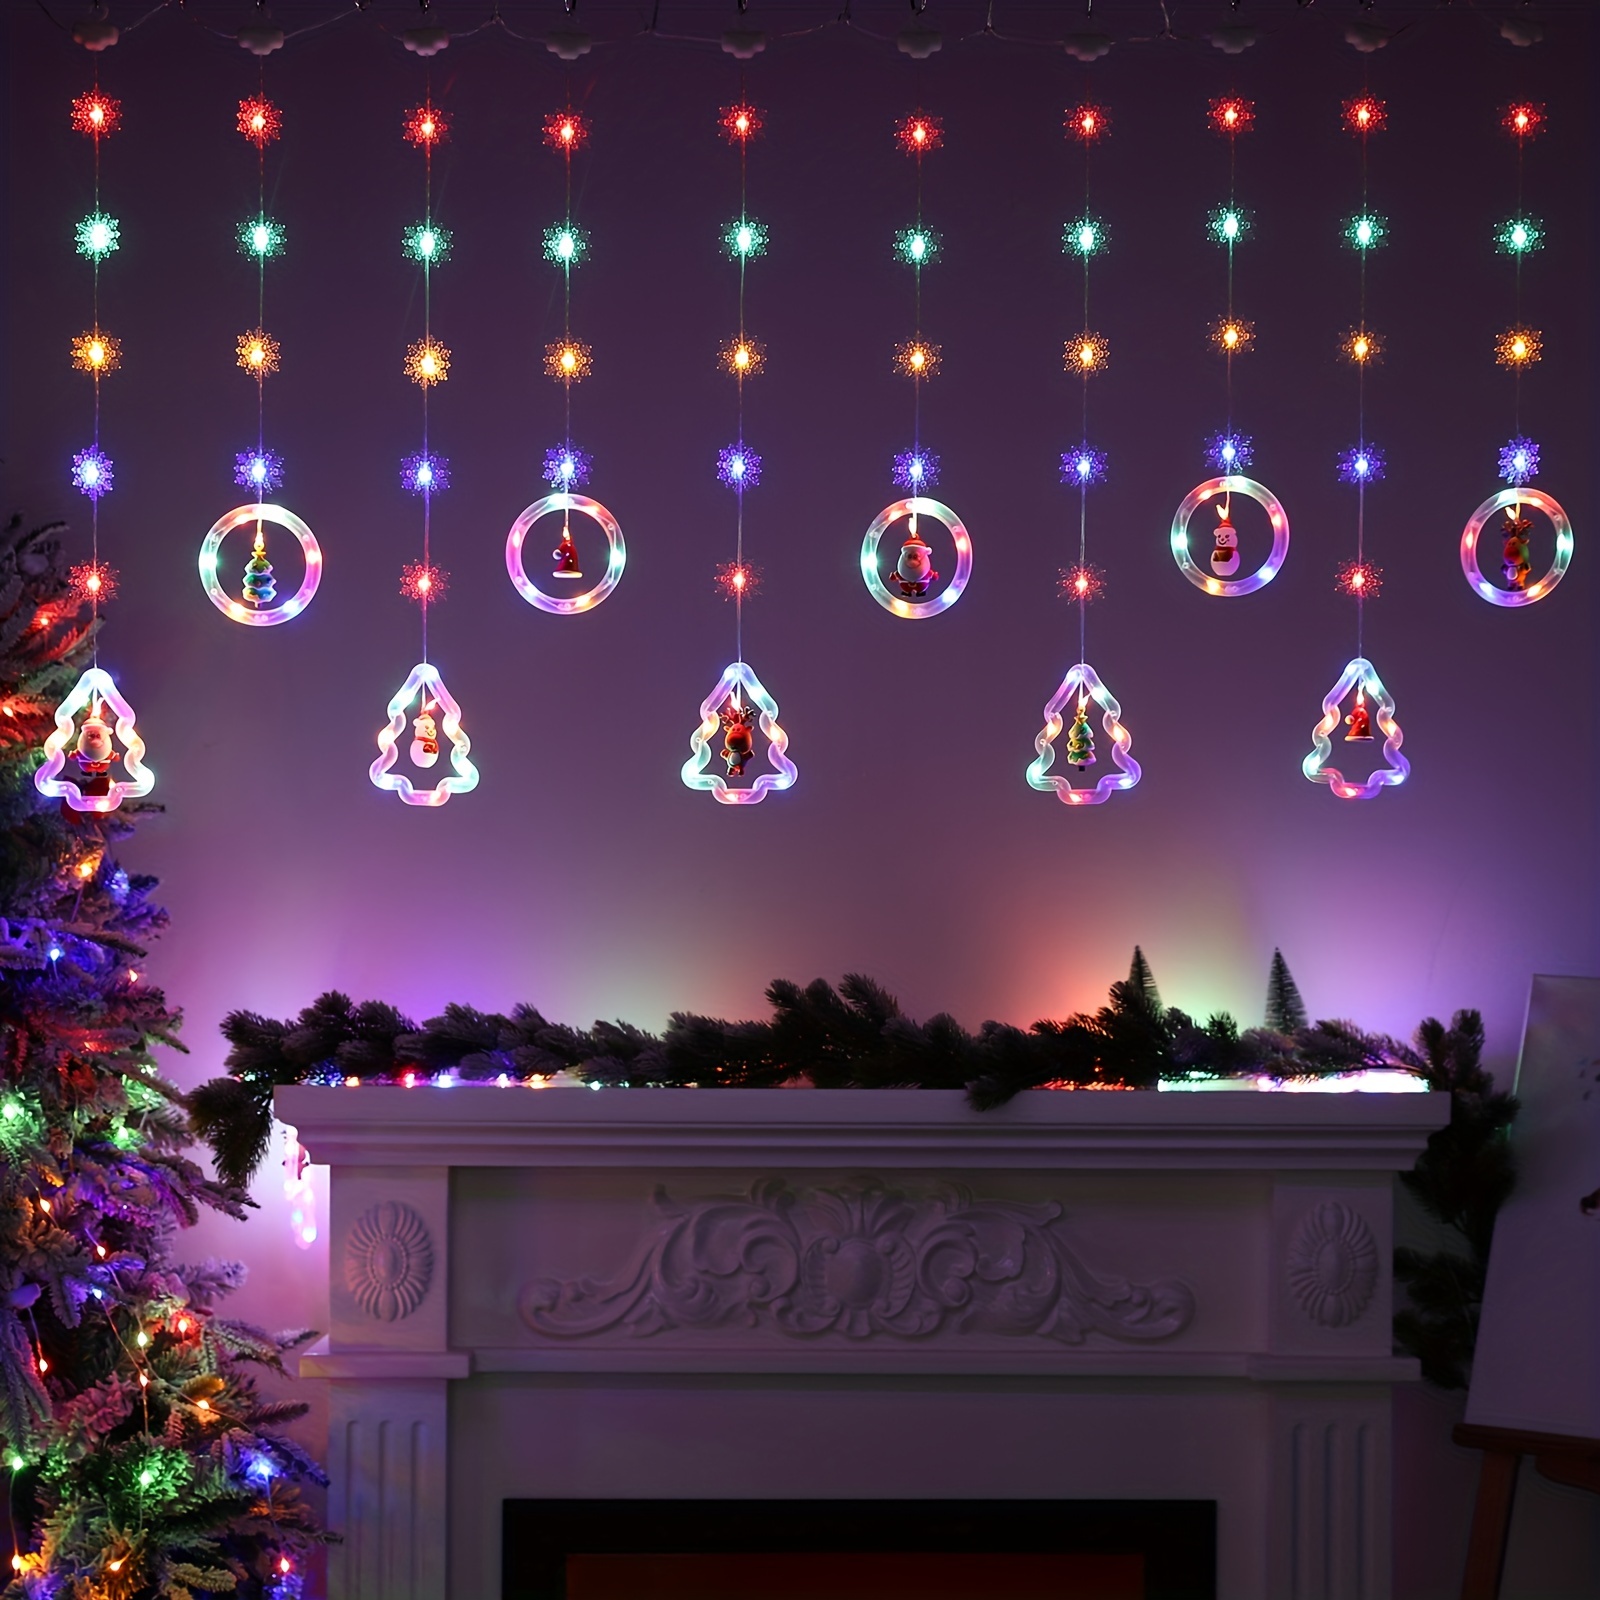 TOPJOWGA Fenêtre Noël Lumière, Guirlande Lumineuse Fenêtre Noël Decoration,  Lumières de Noël Decoration, Lumières de Noël Suspendues 3D avec Ventouse